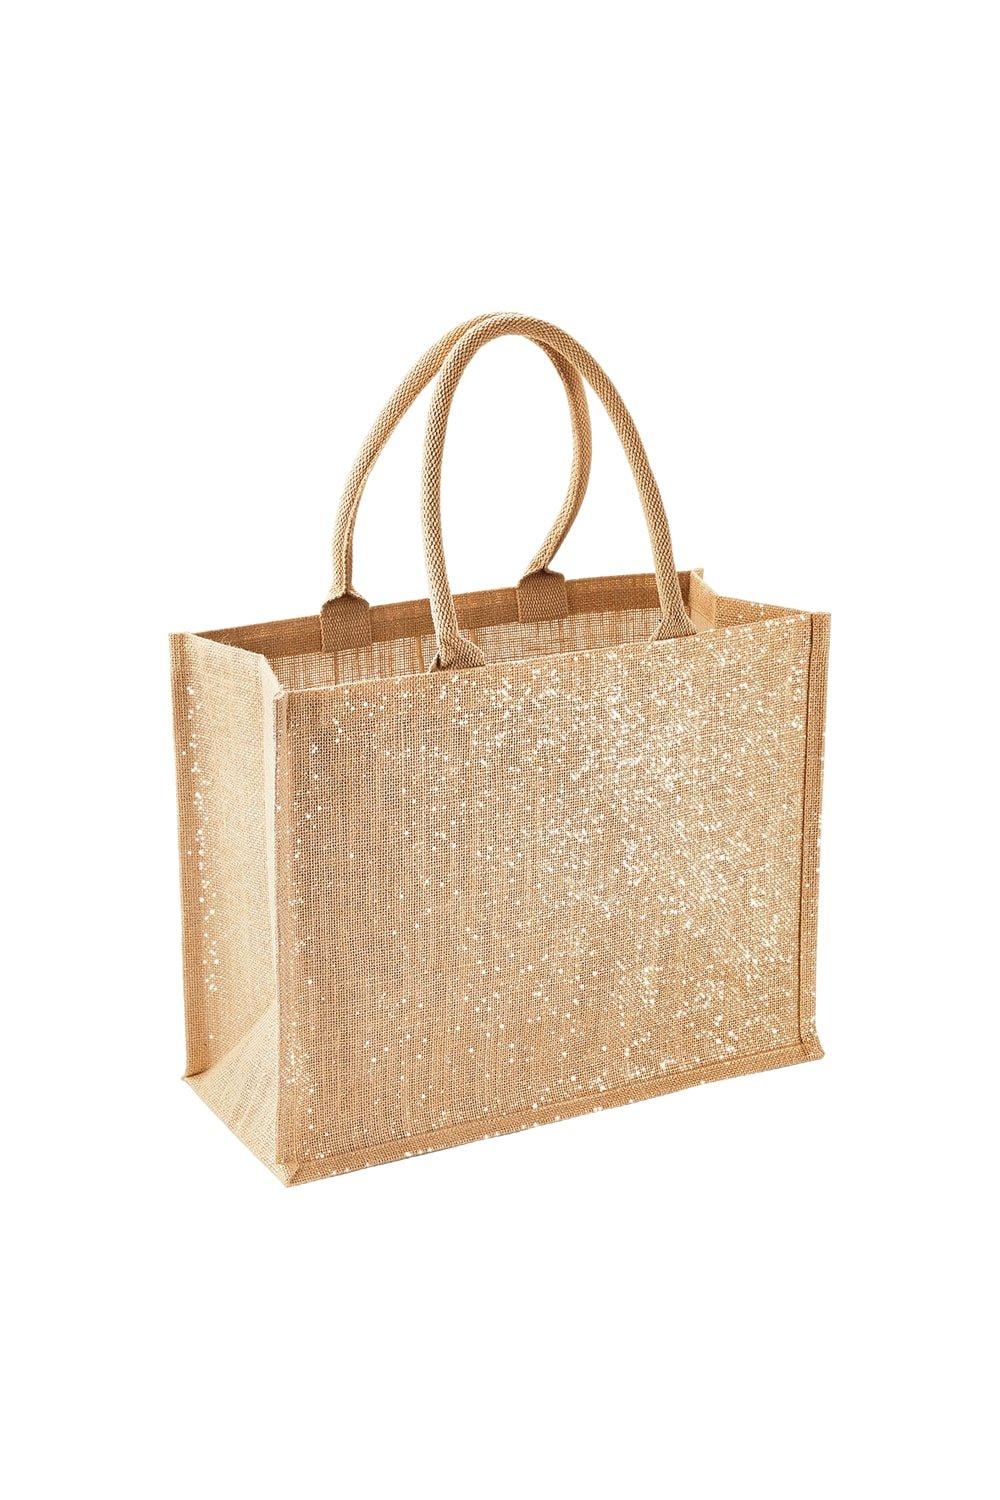 Джутовая сумка-шопер/большая сумка с металлическим отливом (2 шт. в упаковке) Westford Mill, бежевый